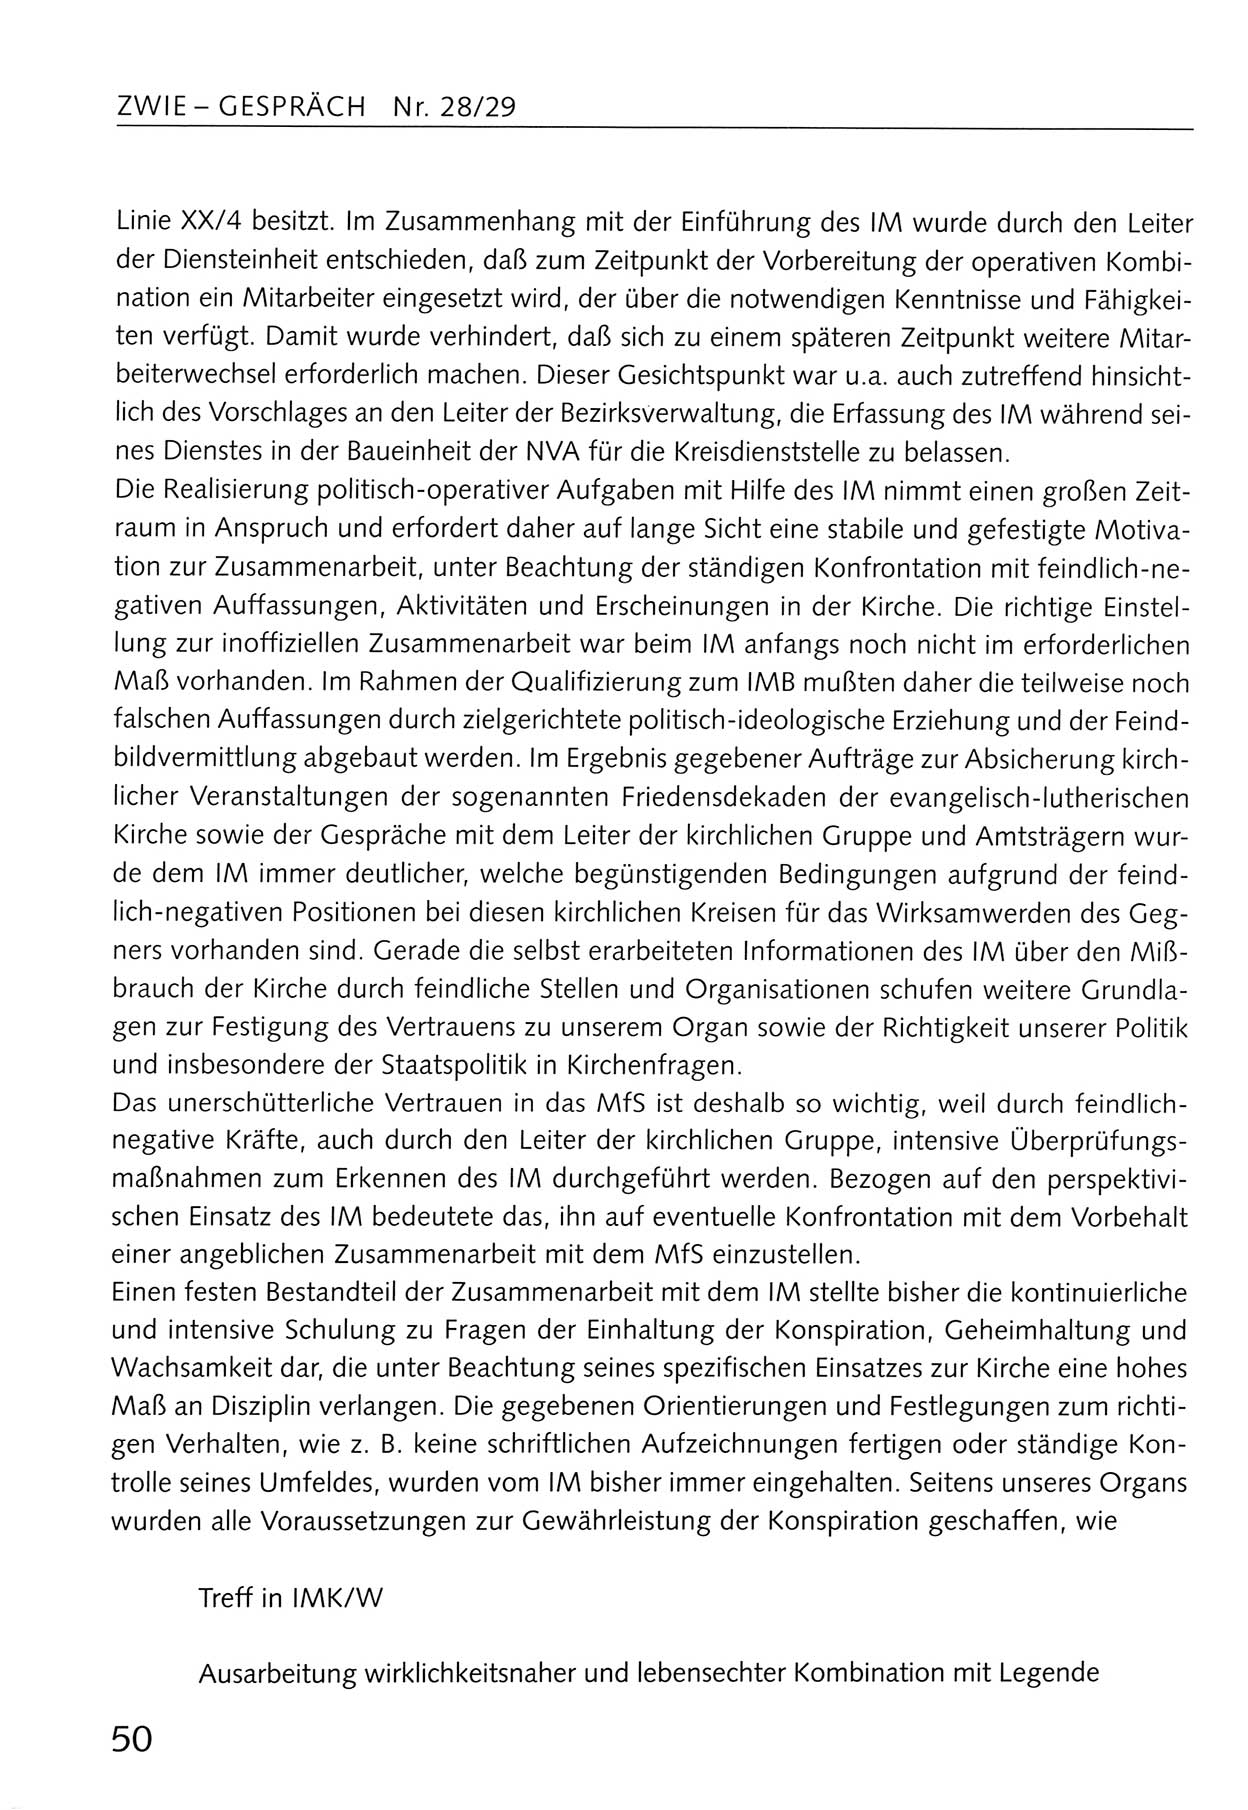 Zwie-Gespräch, Beiträge zum Umgang mit der Staatssicherheits-Vergangenheit [Deutsche Demokratische Republik (DDR)], Ausgabe Nr. 28/29, Berlin 1995, Seite 50 (Zwie-Gespr. Ausg. 28/29 1995, S. 50)